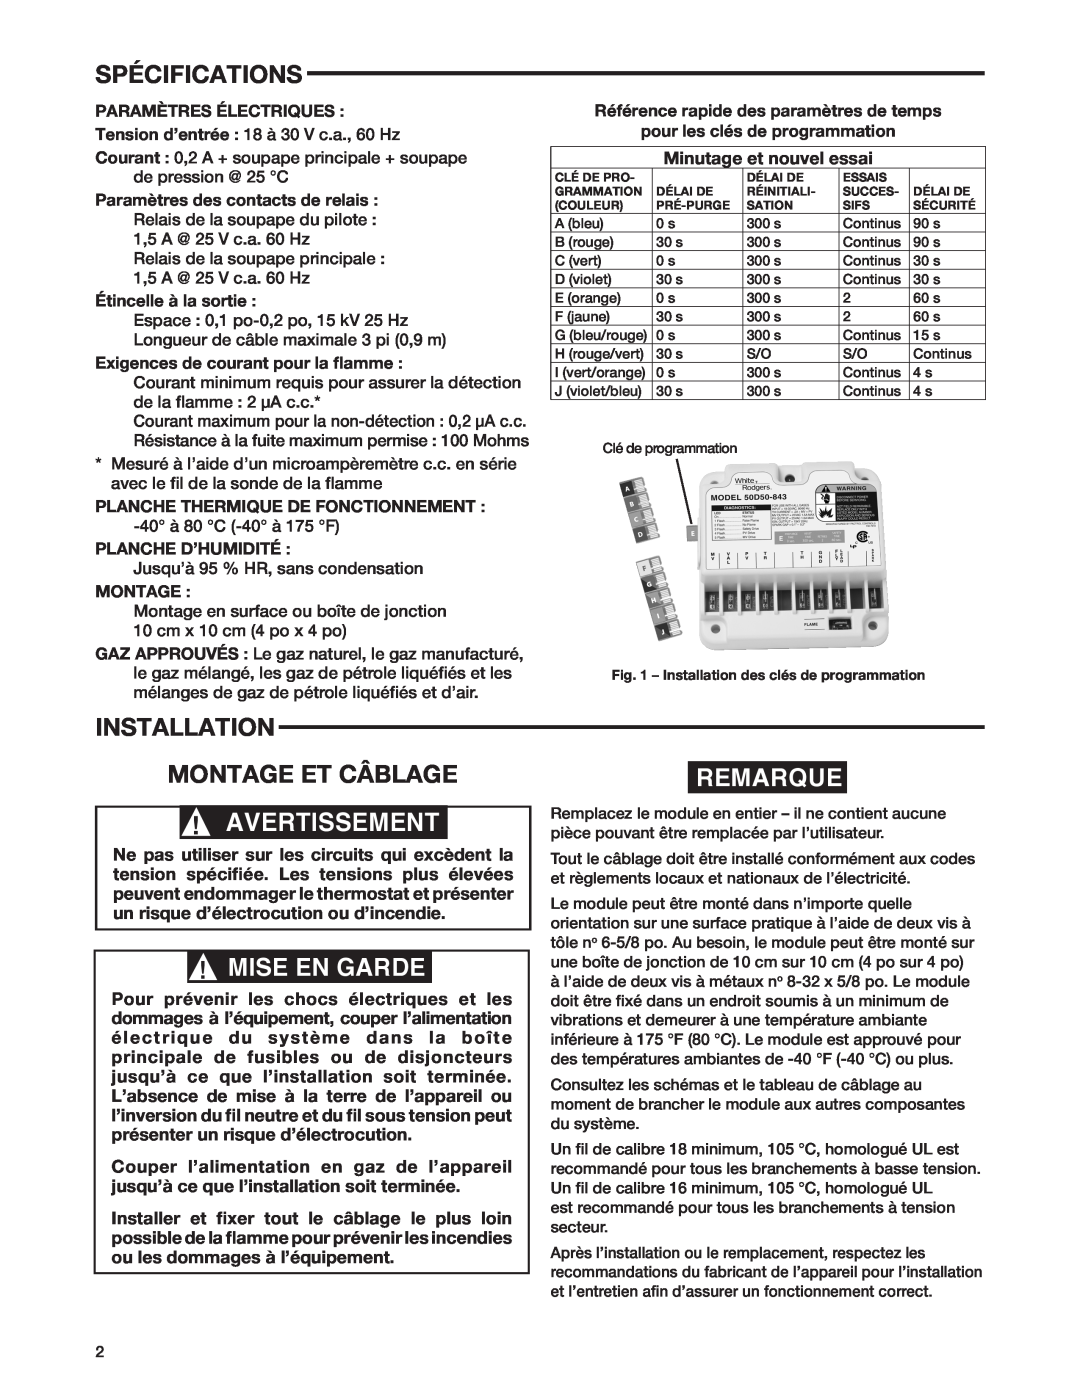 White Rodgers 50D50-843 manual Spécifications, Installation Montage Et Câblage, Remarque, Avertissement, Mise En Garde 